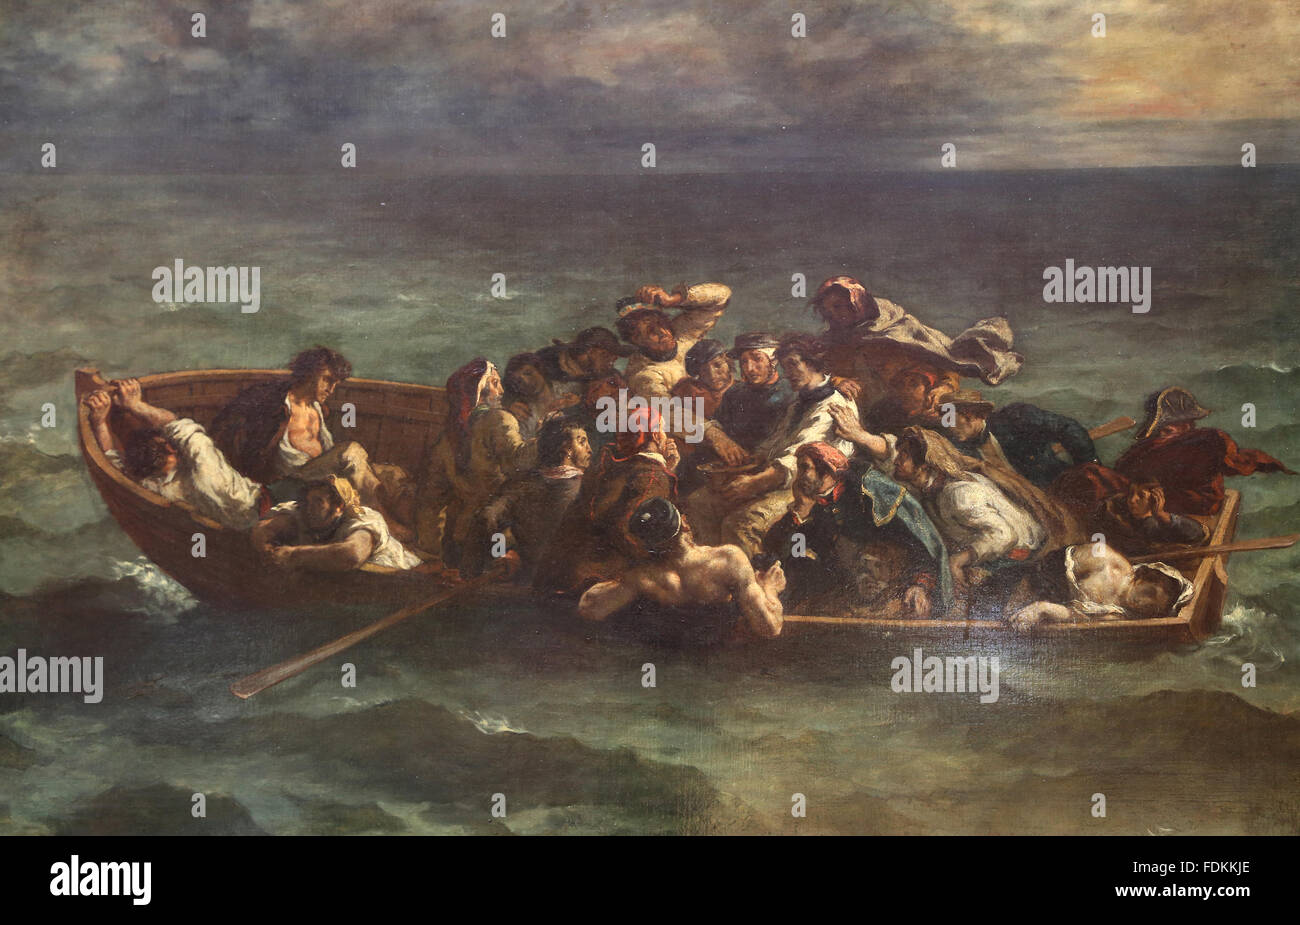 Schiffbruch des Don Juan von Eugène Delacroix (1798-1863) m, 1840. Louvre-Museum. Paris. Frankreich. Stockfoto